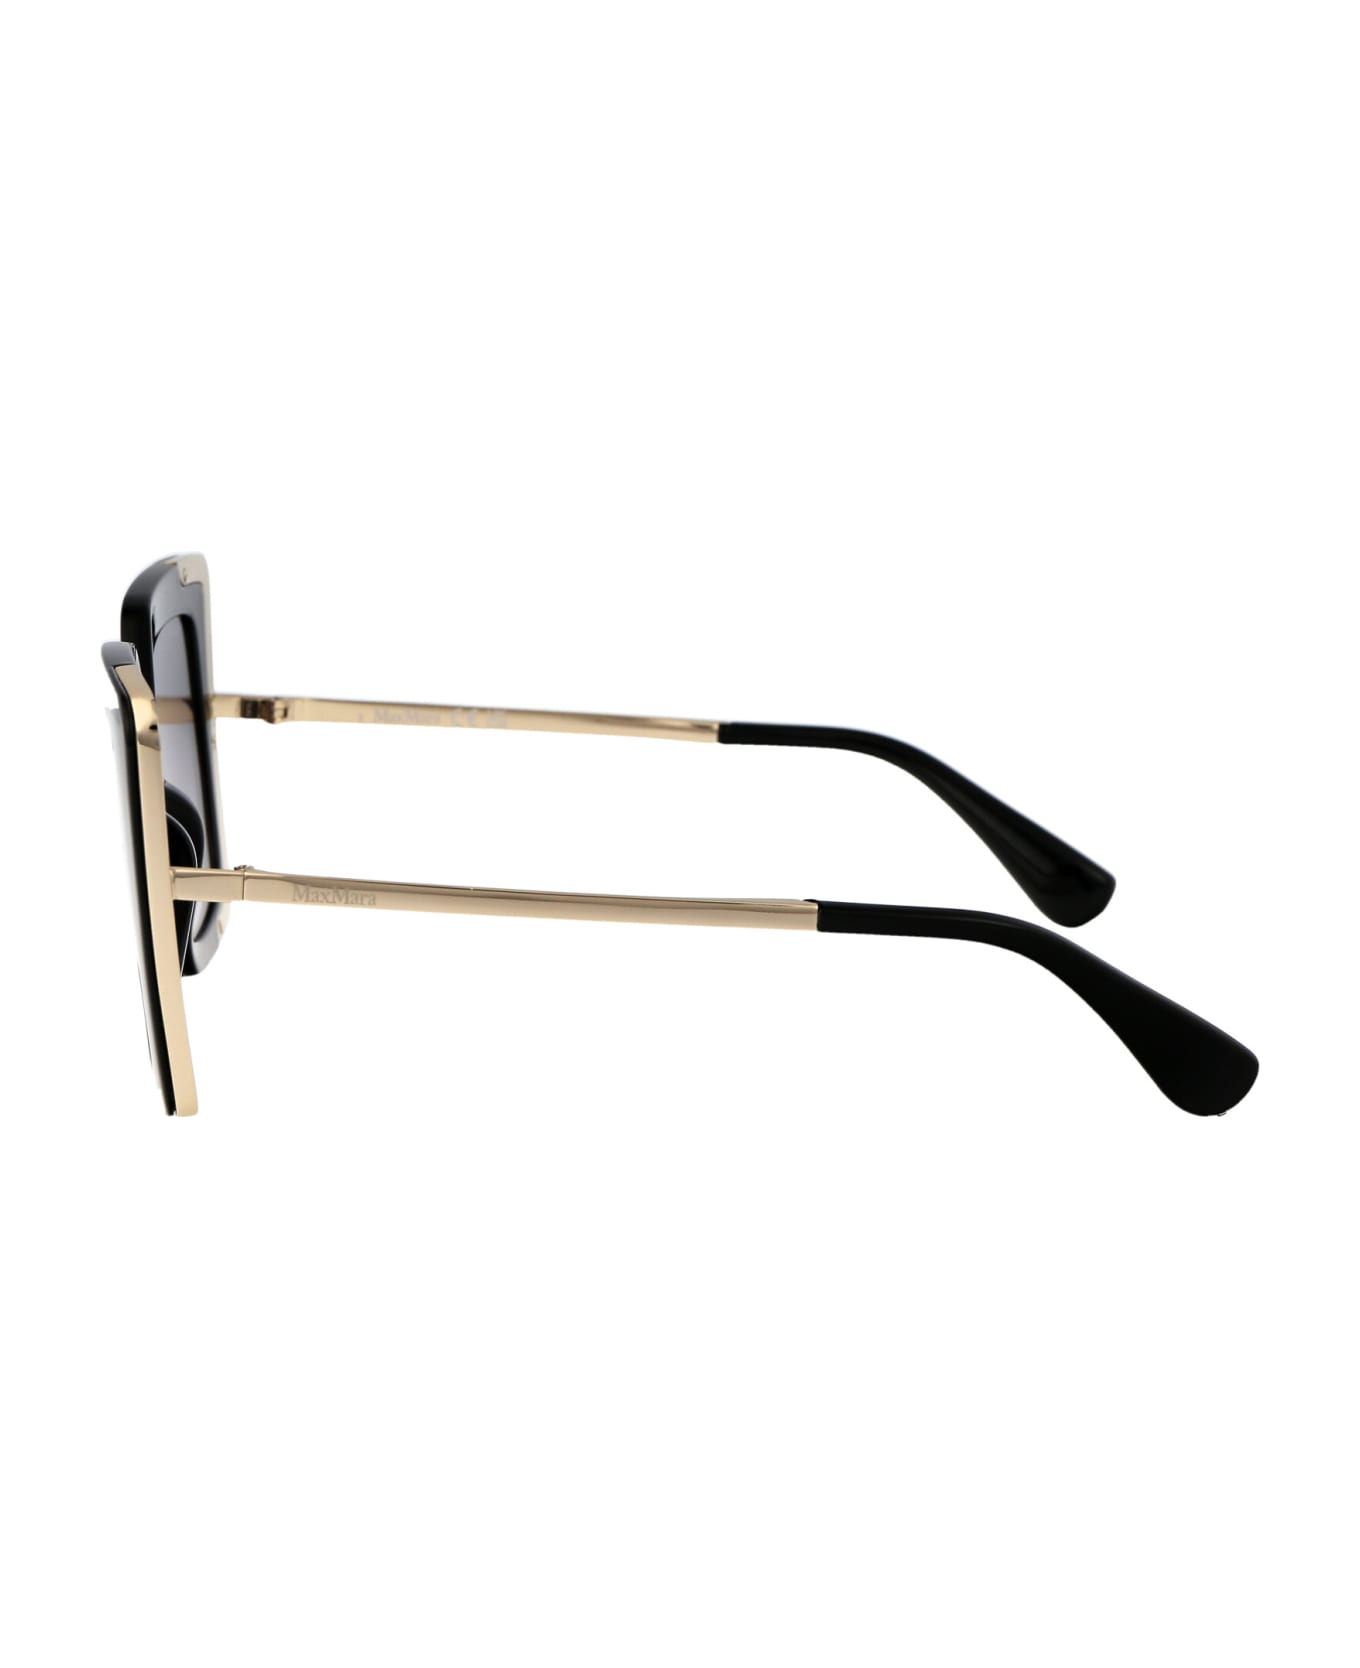 Max Mara Design4 Sunglasses - 01B Nero Lucido/Fumo Grad